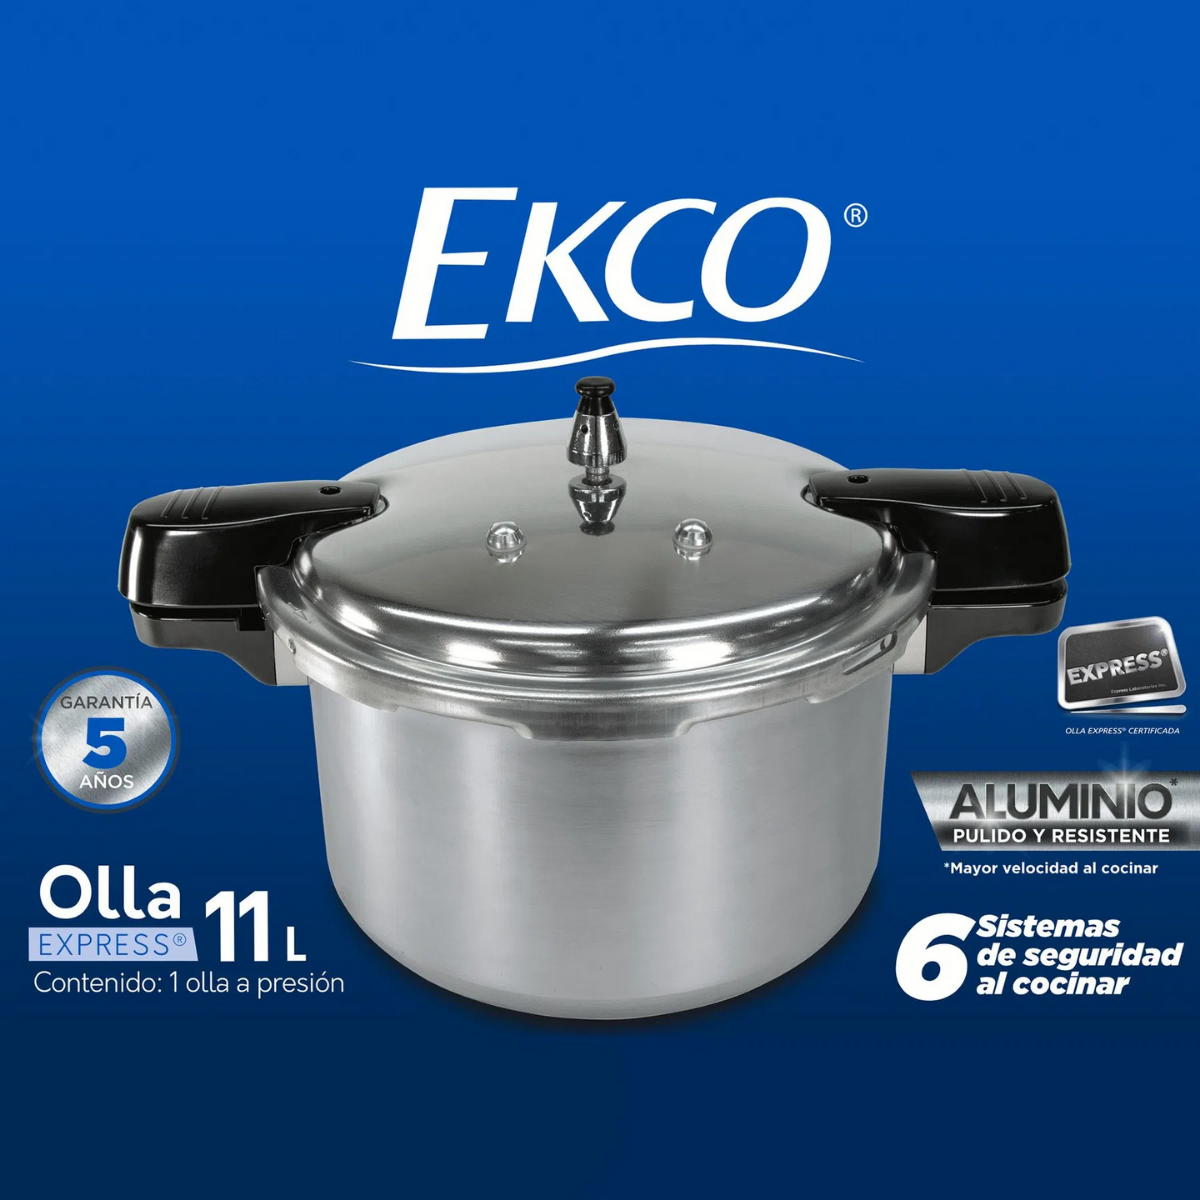 Olla Express 11 Lt. Ekco de Aluminio  ANFORAMA - Todo para mi Cocina –  ANFORAMA (Todo para mi Cocina)